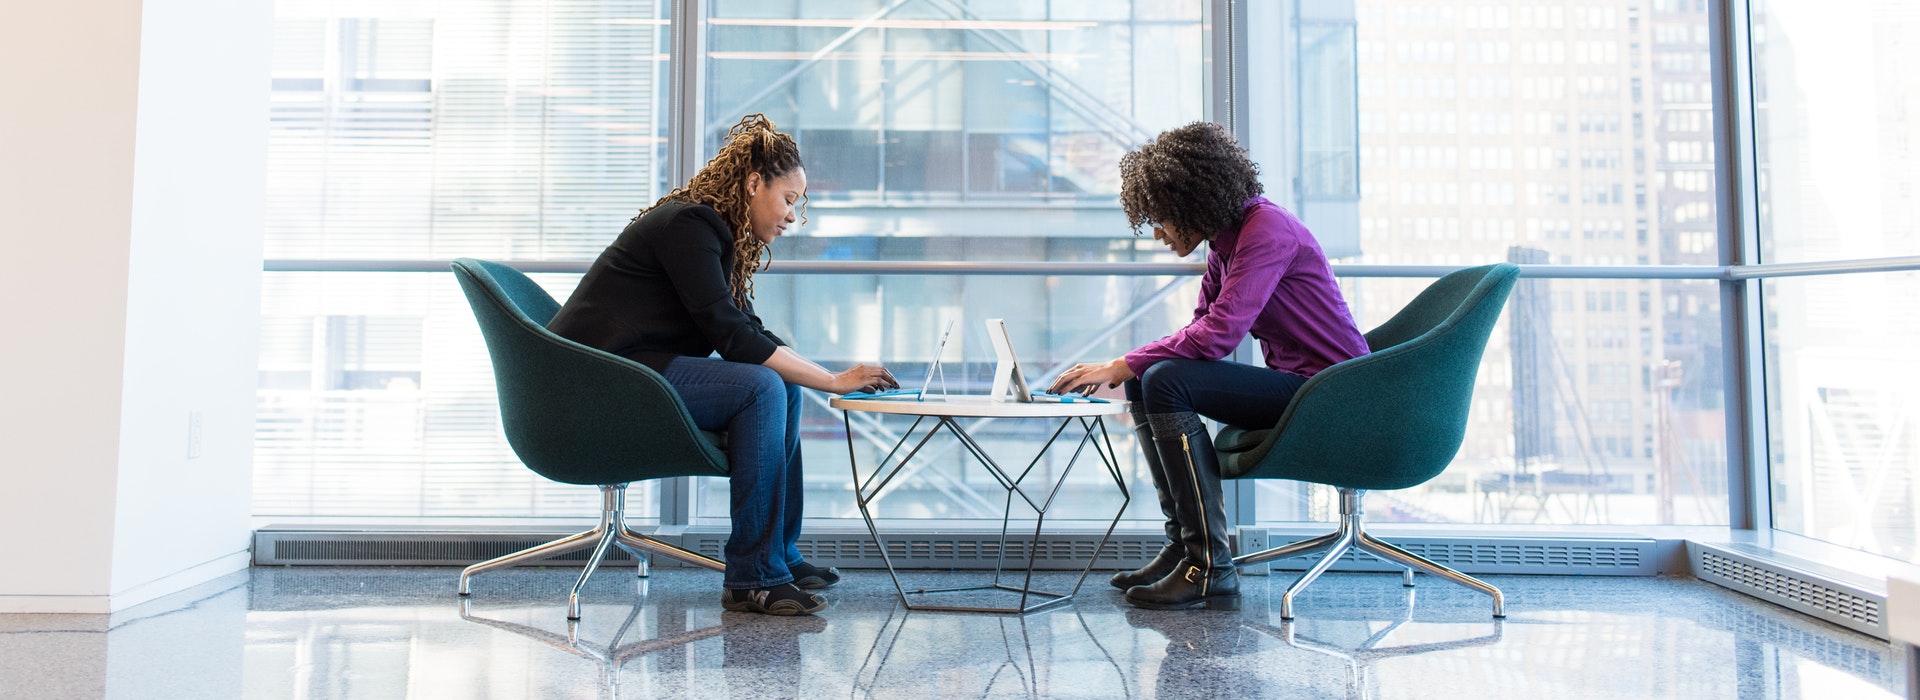 Deux femmes sont assises en face l'une de l'autre, travaillant sur des ordinateurs portables